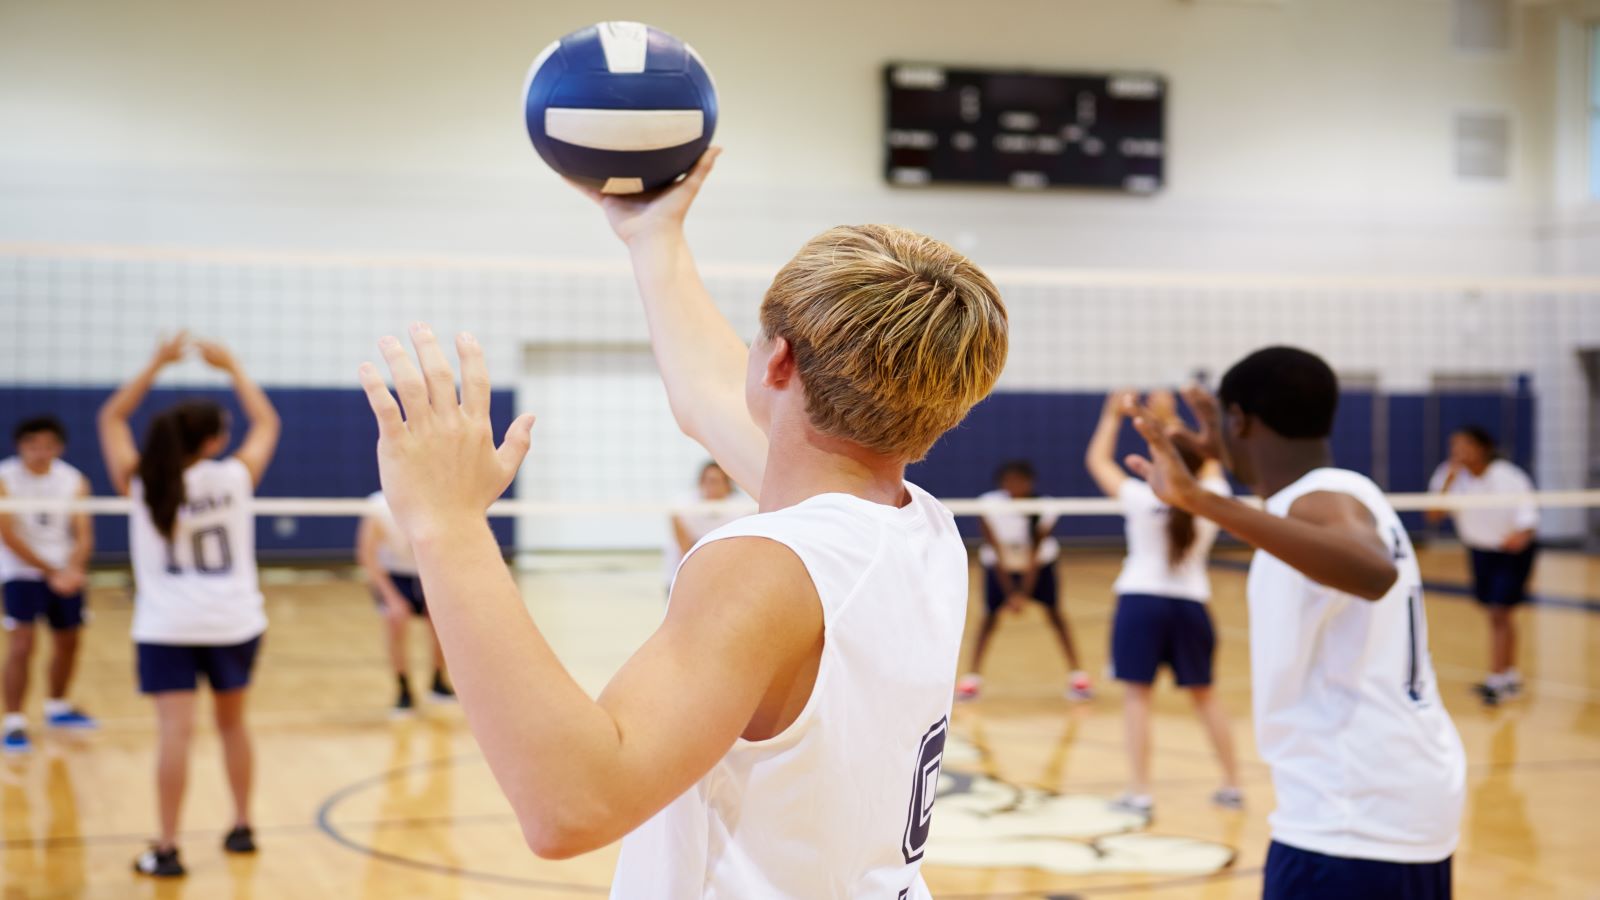 Ungdommer spiller volleyball